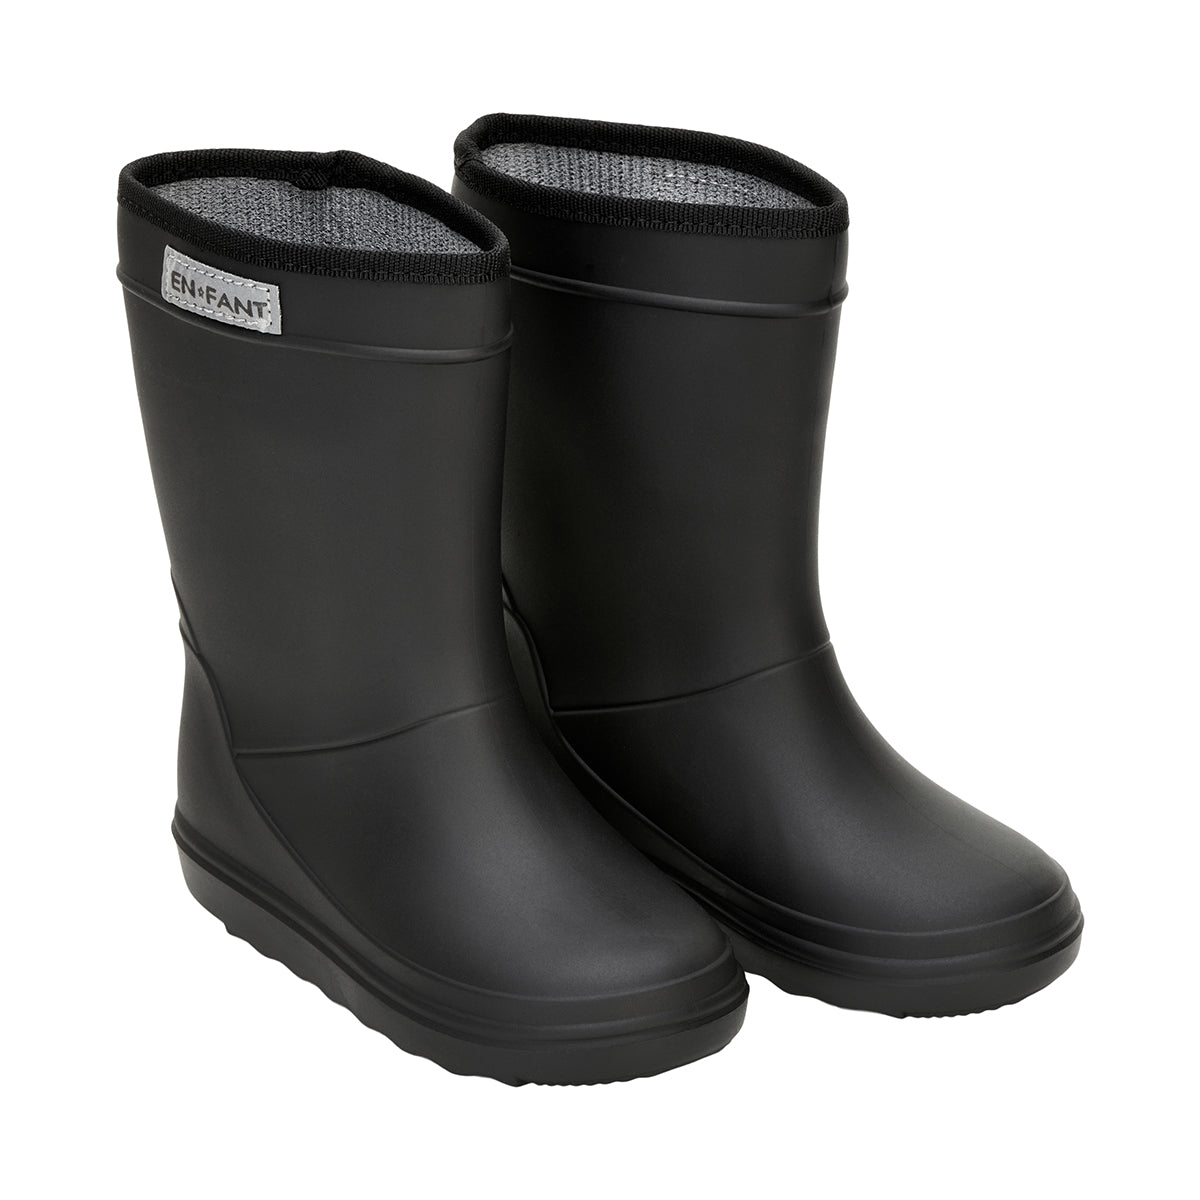 Dit zijn de regenlaarzen black van het bekende, populaire Deense merk En Fant. Deze laarzen zijn zwart van kleur. De regenlaarzen zijn gevoerd, wat ze heerlijk warm maakt voor op koudere dagen. VanZus